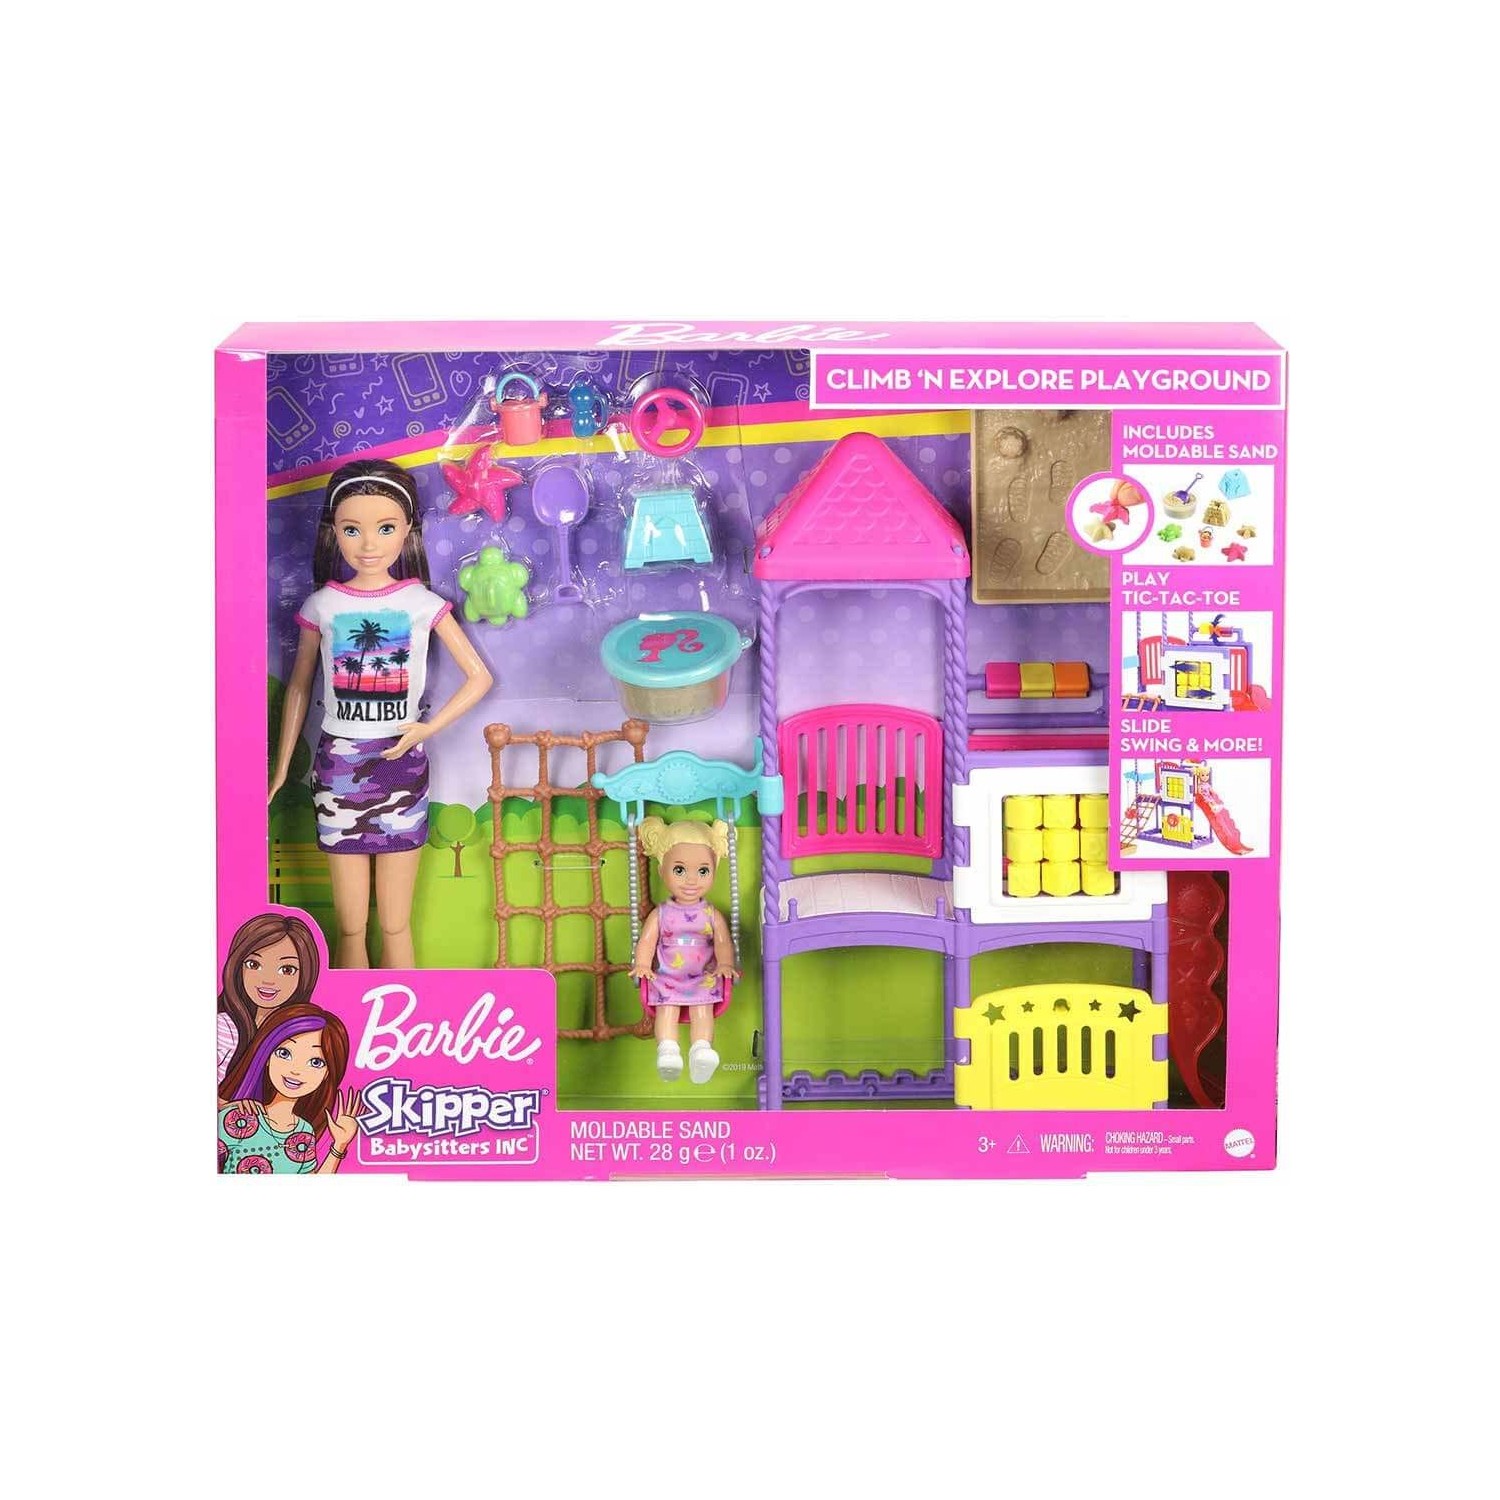 набор юнгианская песочница сенд плей Игровой набор Barbie Skipper Babysitters